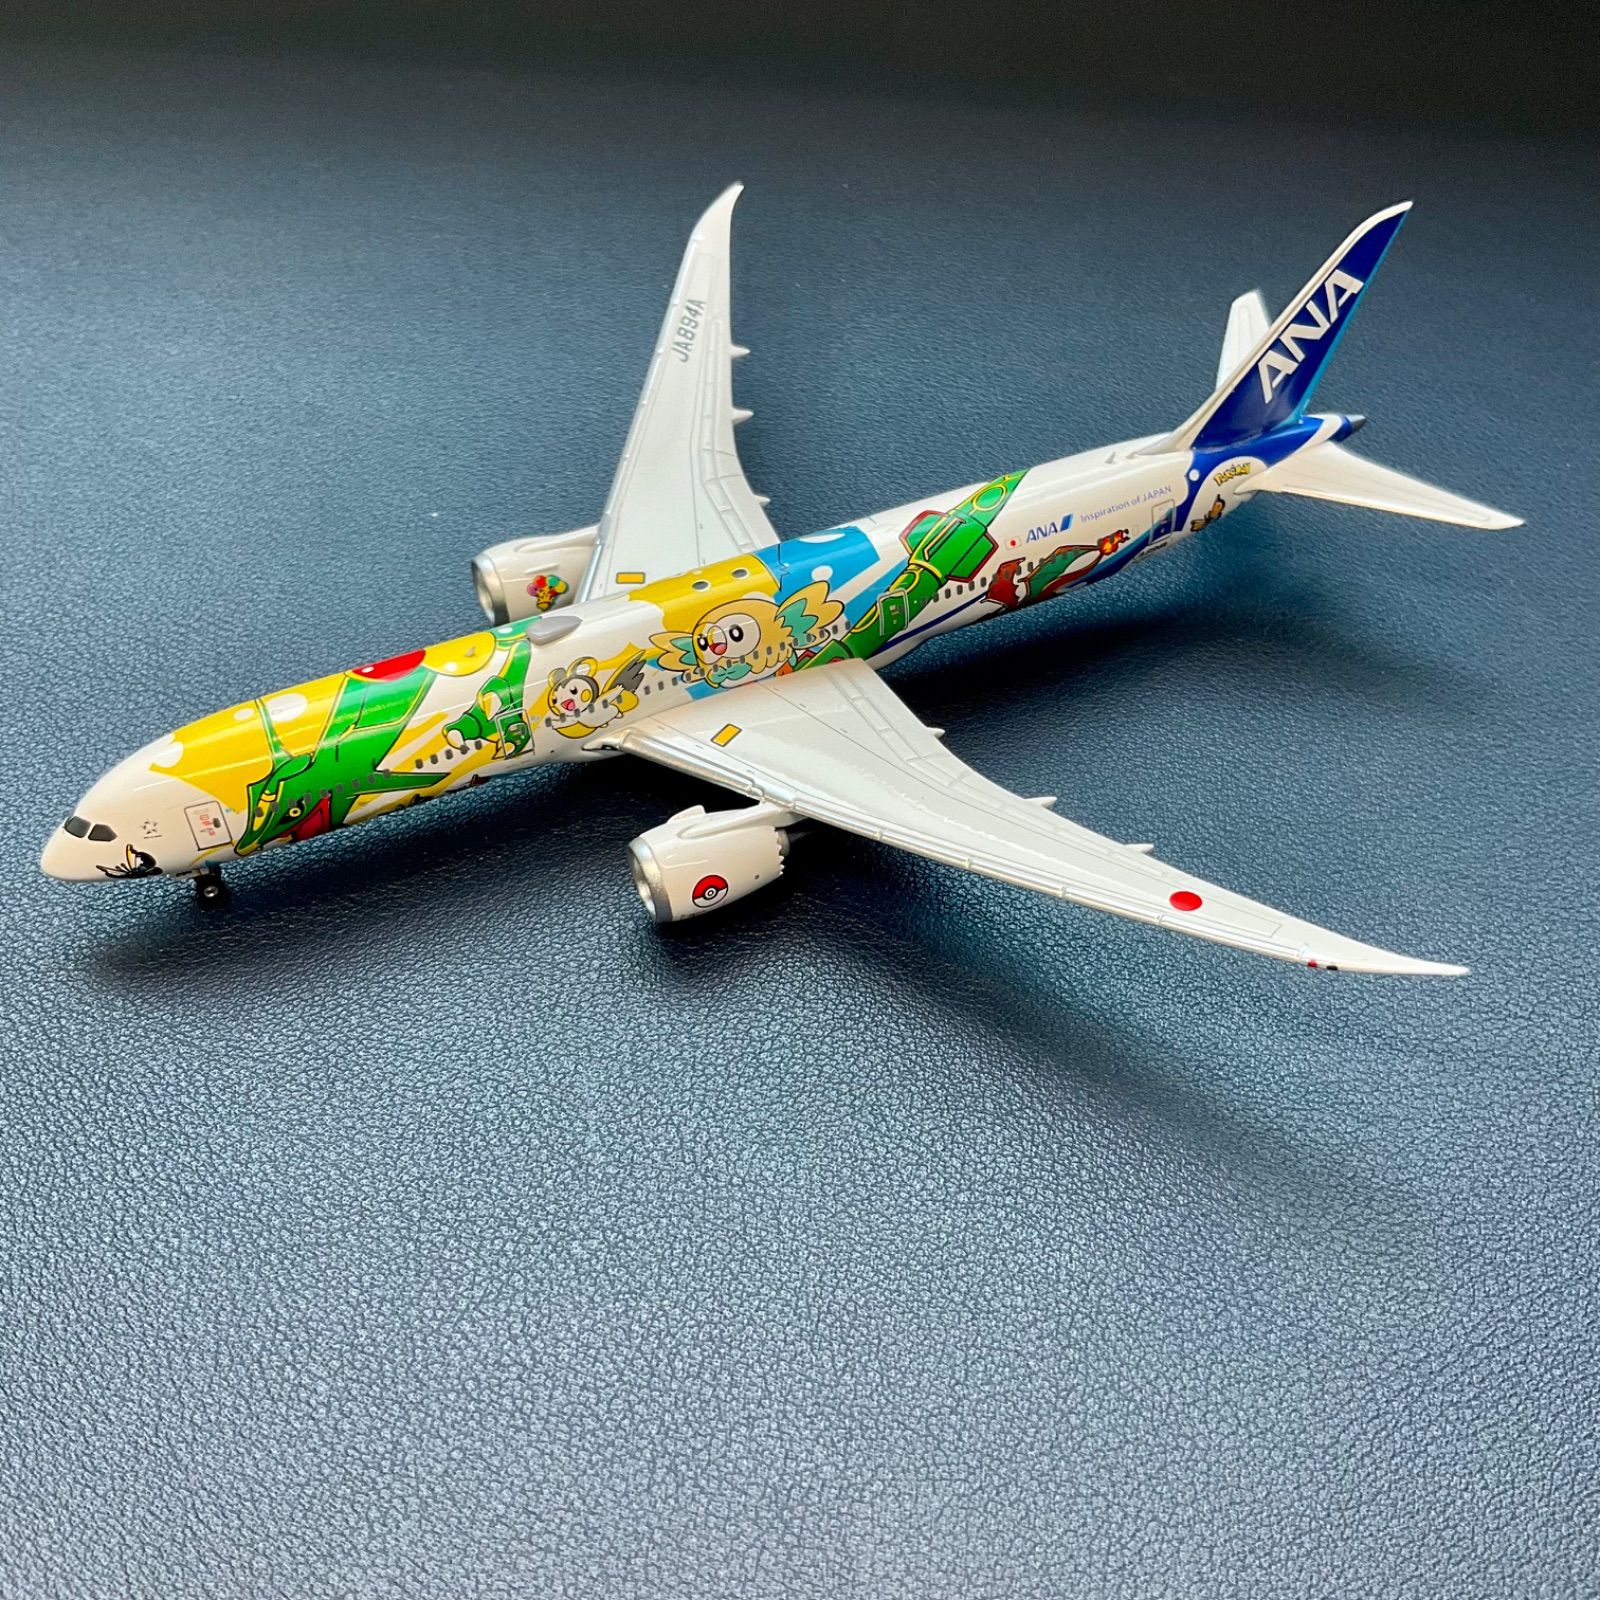 ANA 787-9 ピカチュウジェット JA894A 全日空 ポケモン NG - 航空機